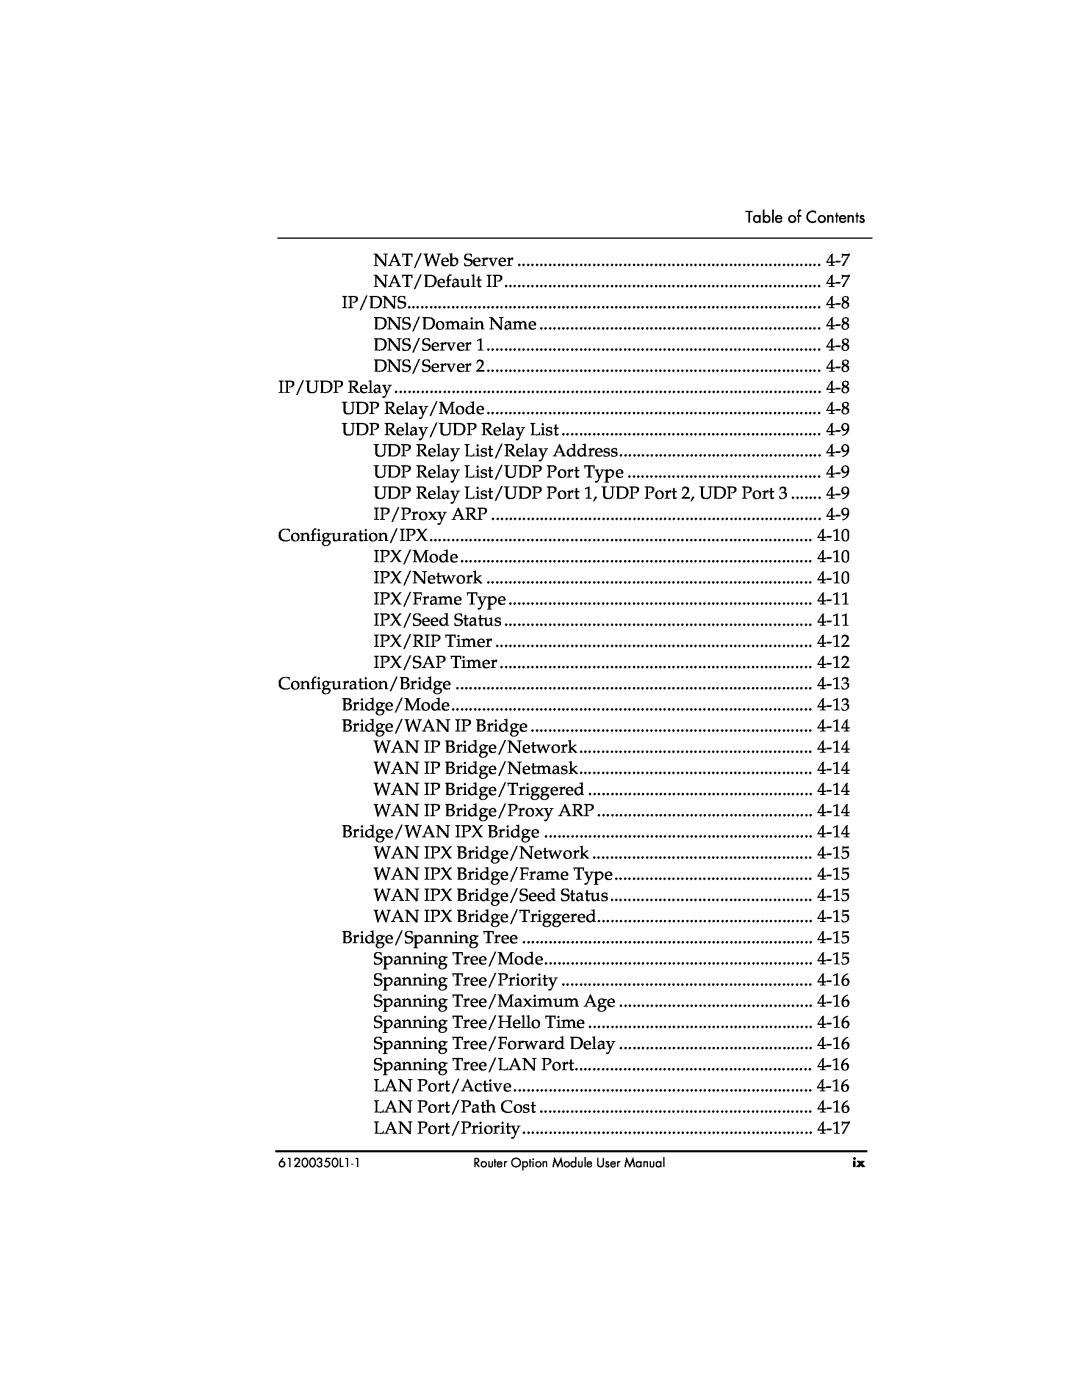 ADTRAN 1200350L1 user manual Table of Contents 